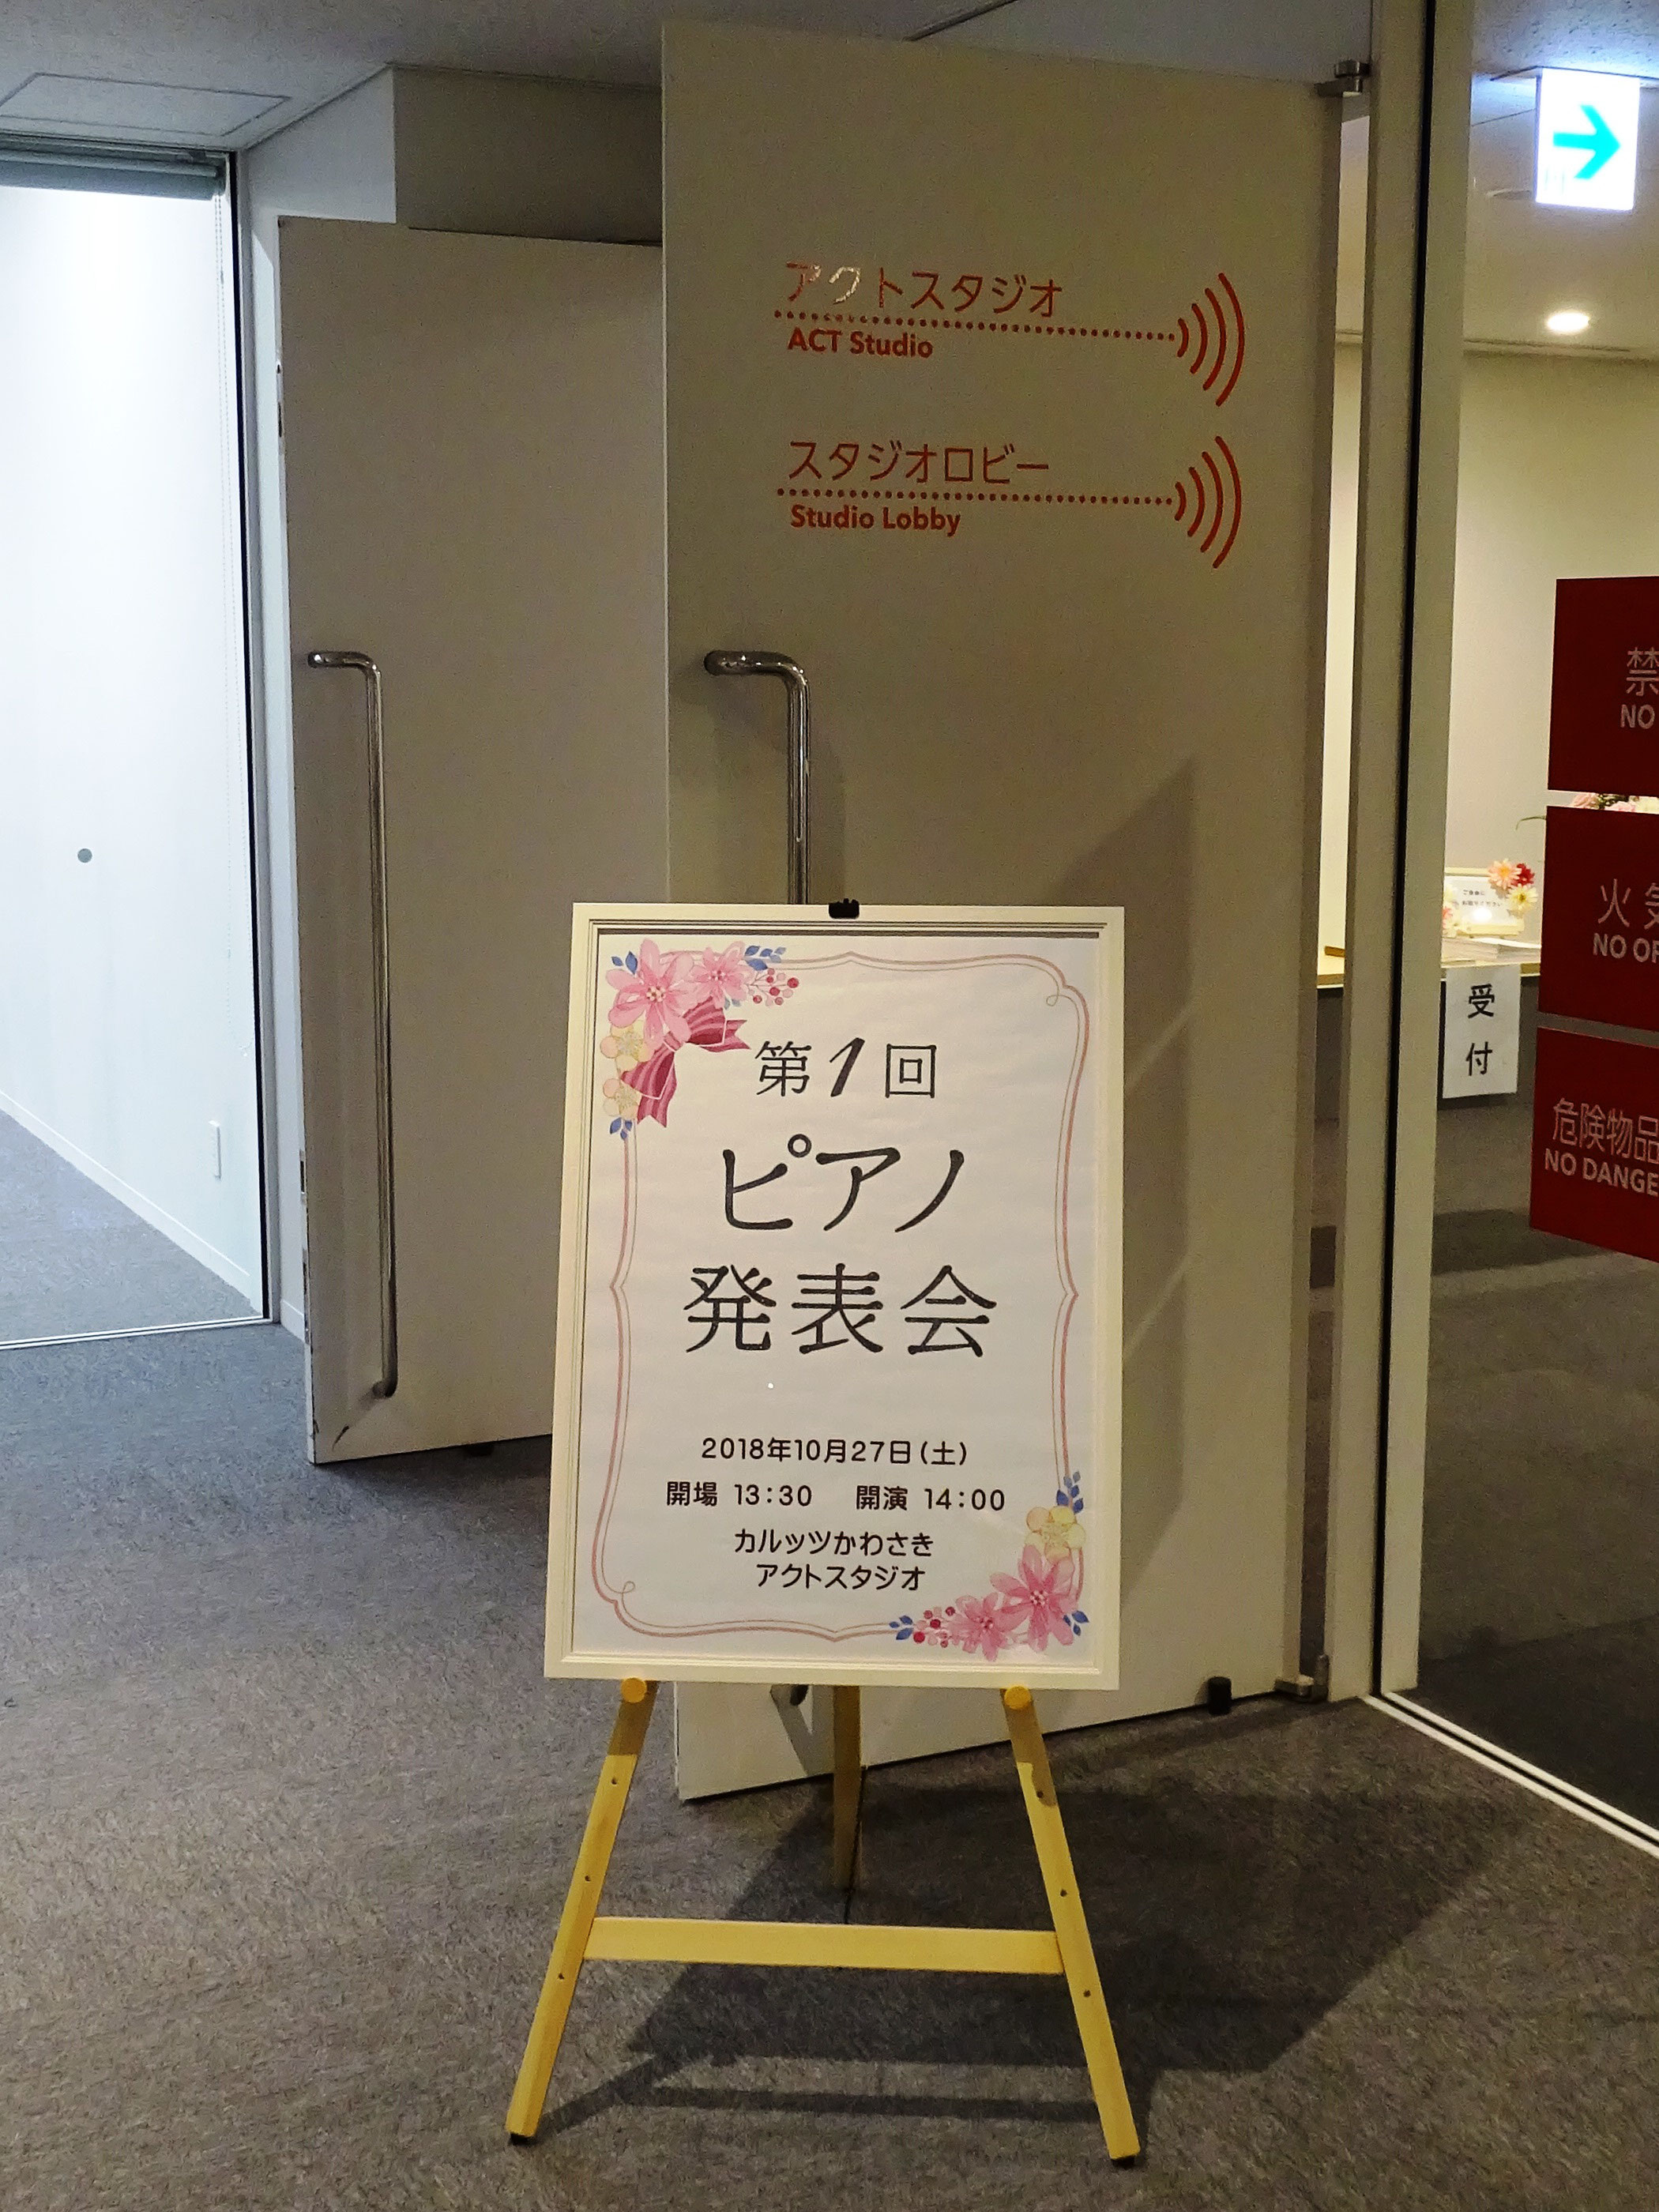 第1回ピアノ発表会 ねもとピアノ教室 川崎区藤崎の個人ピアノ教室